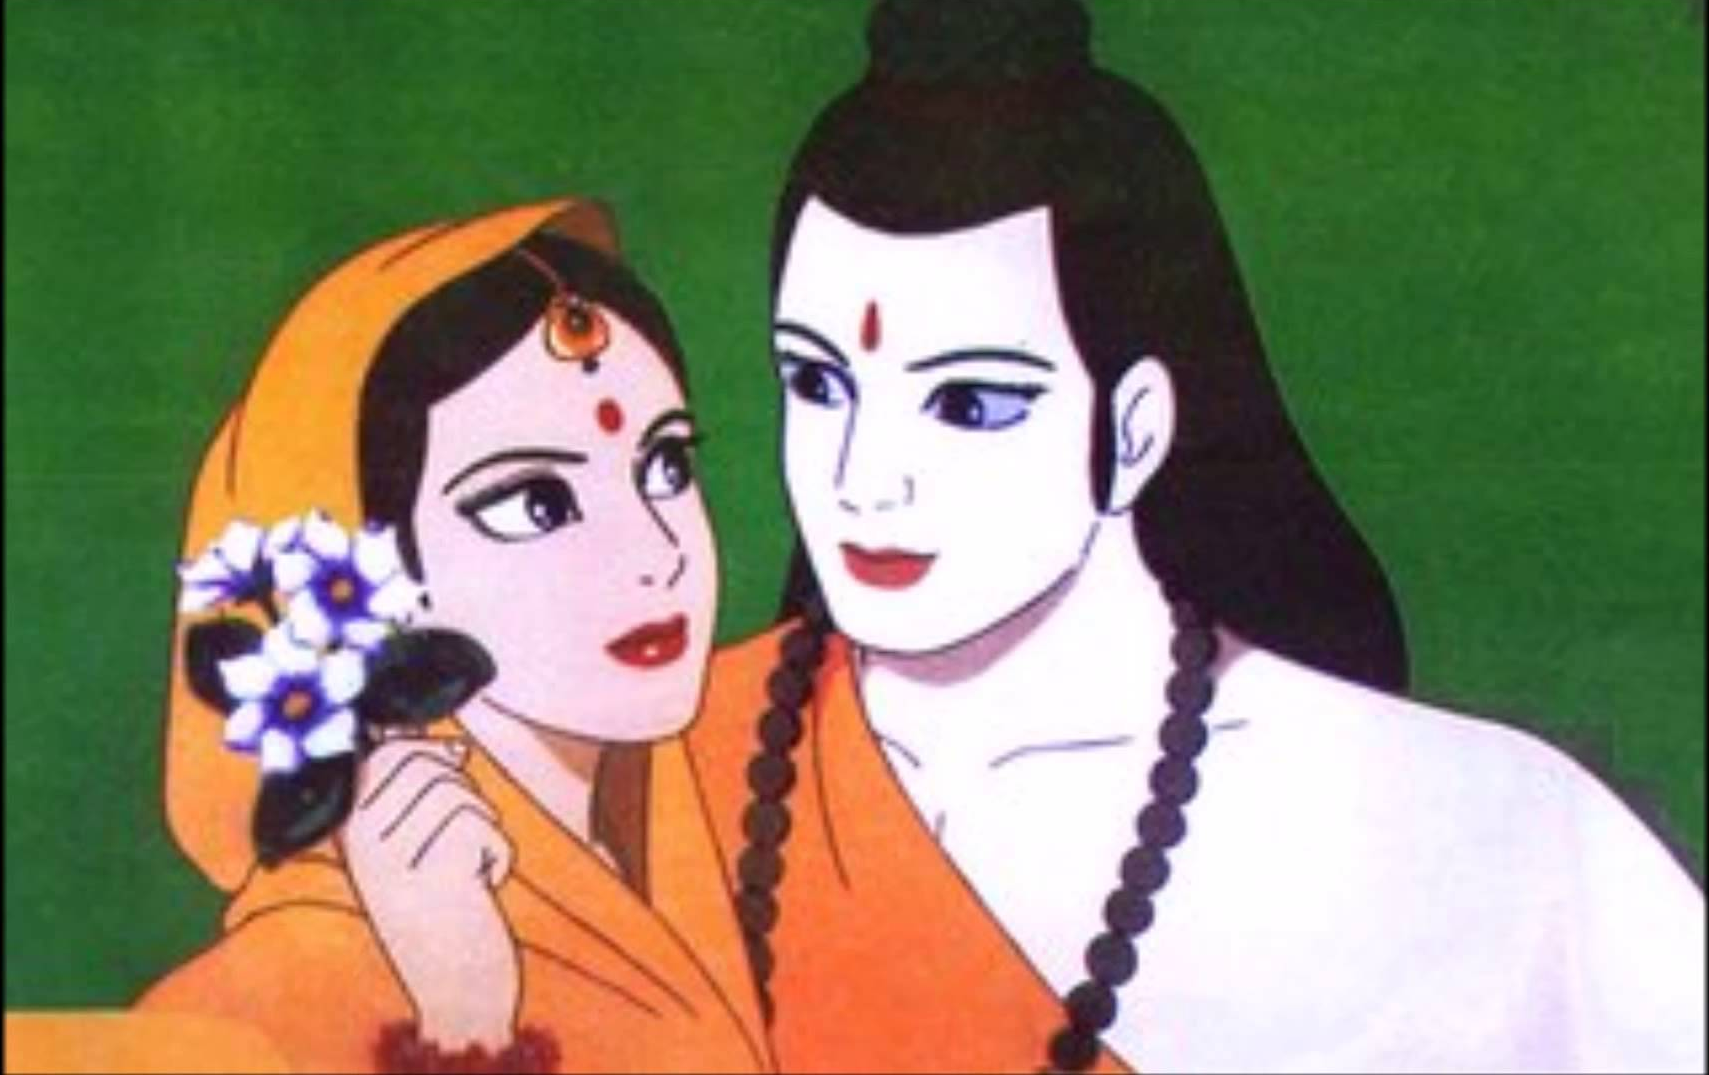 भारतीय भाषाओ में रामकाव्य और अहमदबख्श थानेसरी कृत हरियाणवी रामायण